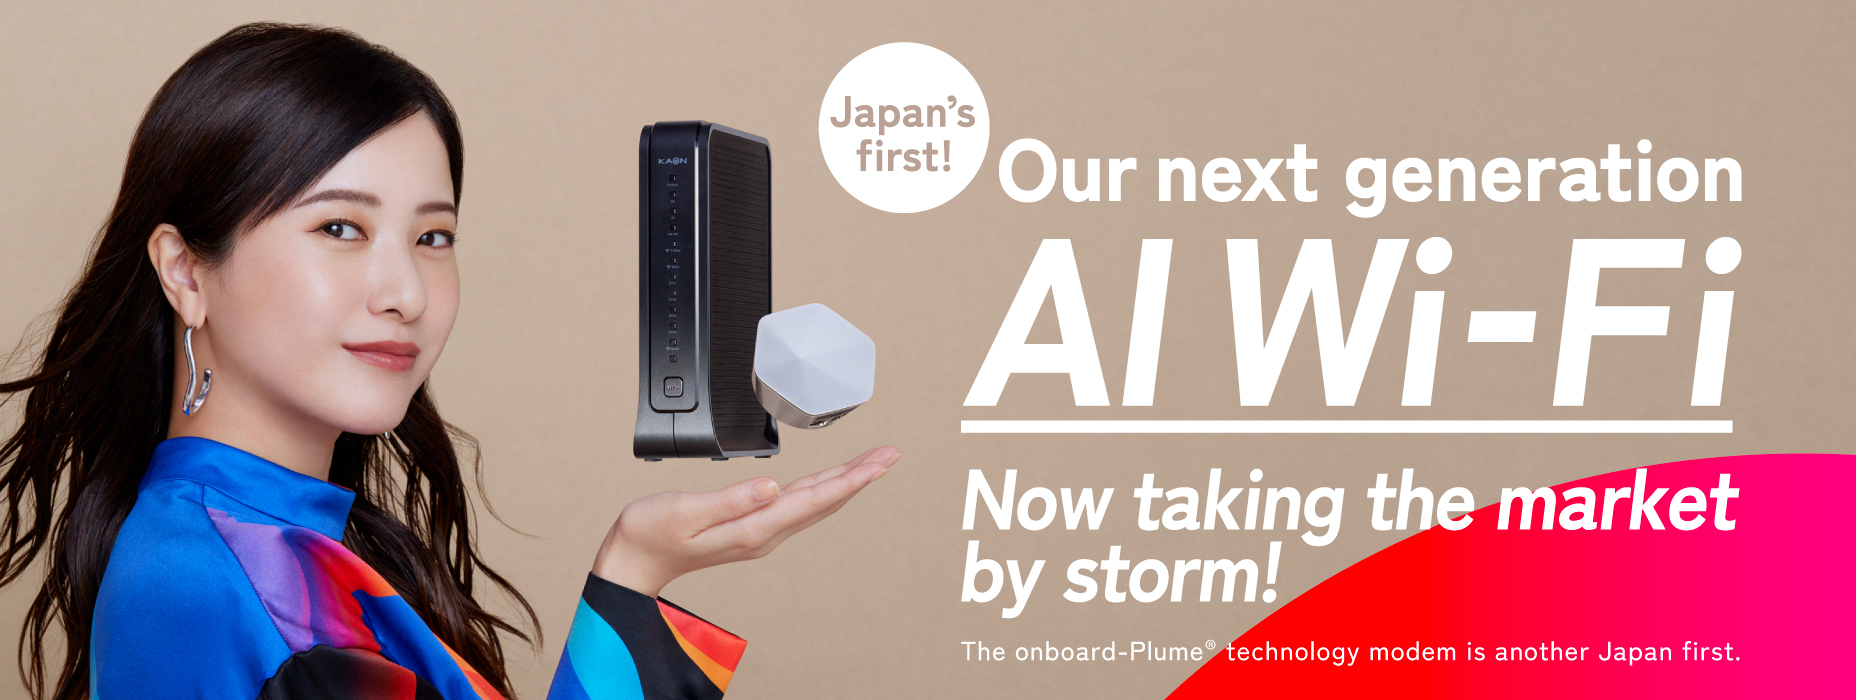 일본 최초 차세대 AI Wi-Fi 대호평! ※PLUME® 테크놀로지 내장 모뎀의 판매가 일본 최초